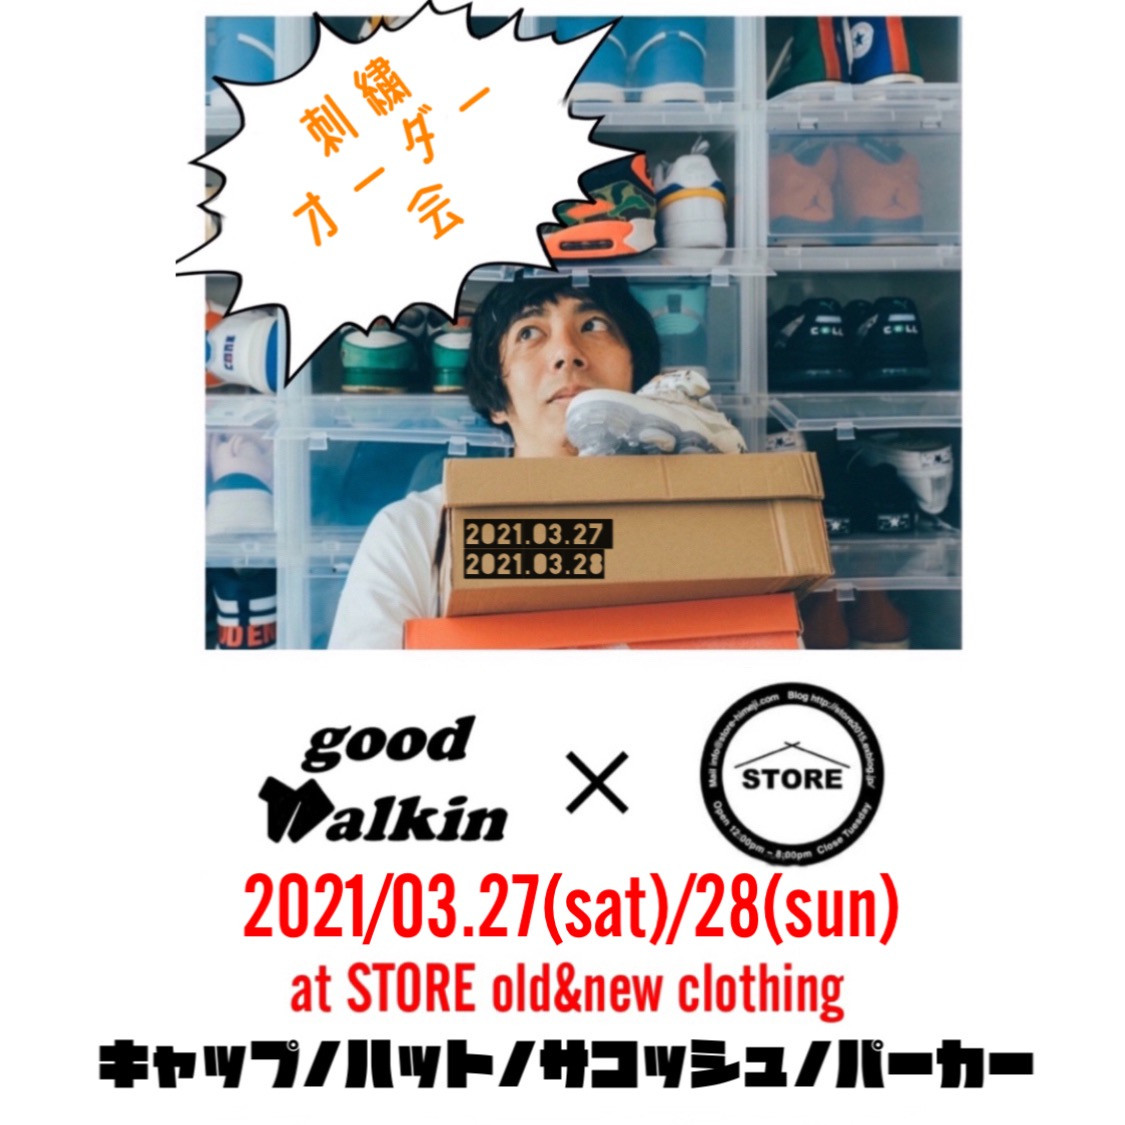 2021.03/27.28 “GOODWALKIN “ 刺繍オーダー会・即売会